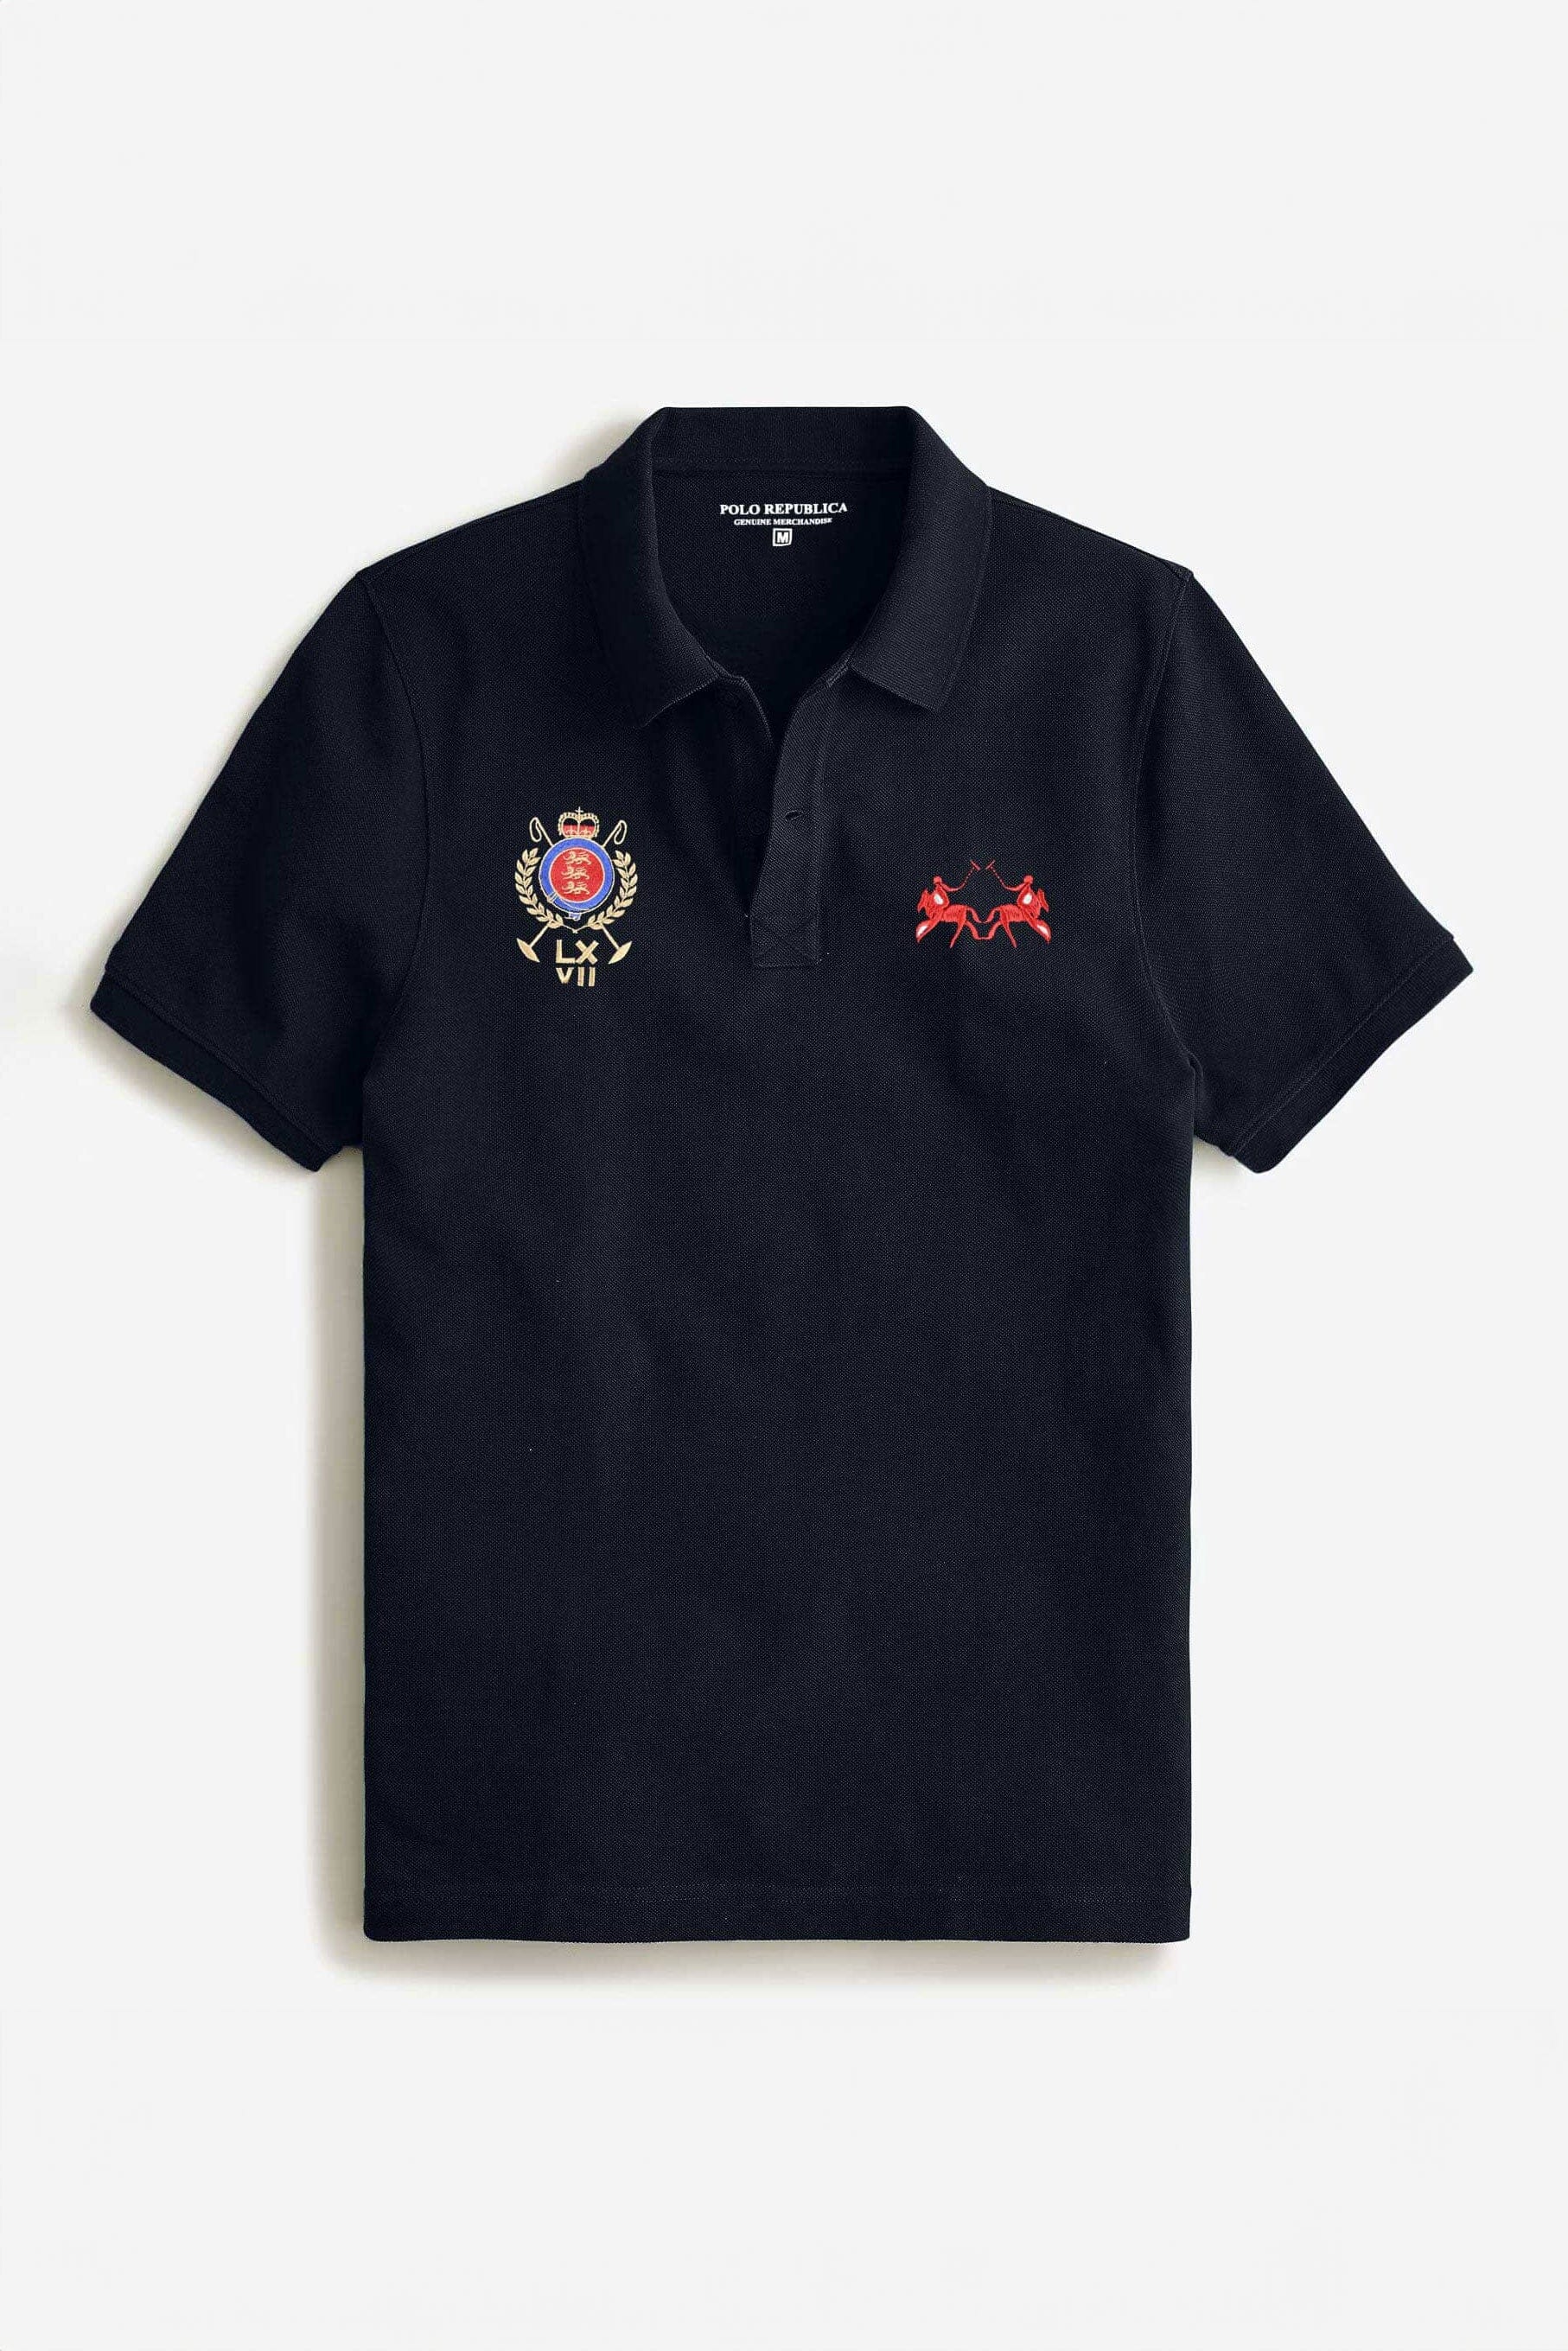 Polo Republica Men's Double Horse & Emblem Embroidered Short Sleeve Polo Shirt Men's Polo Shirt Polo Republica 